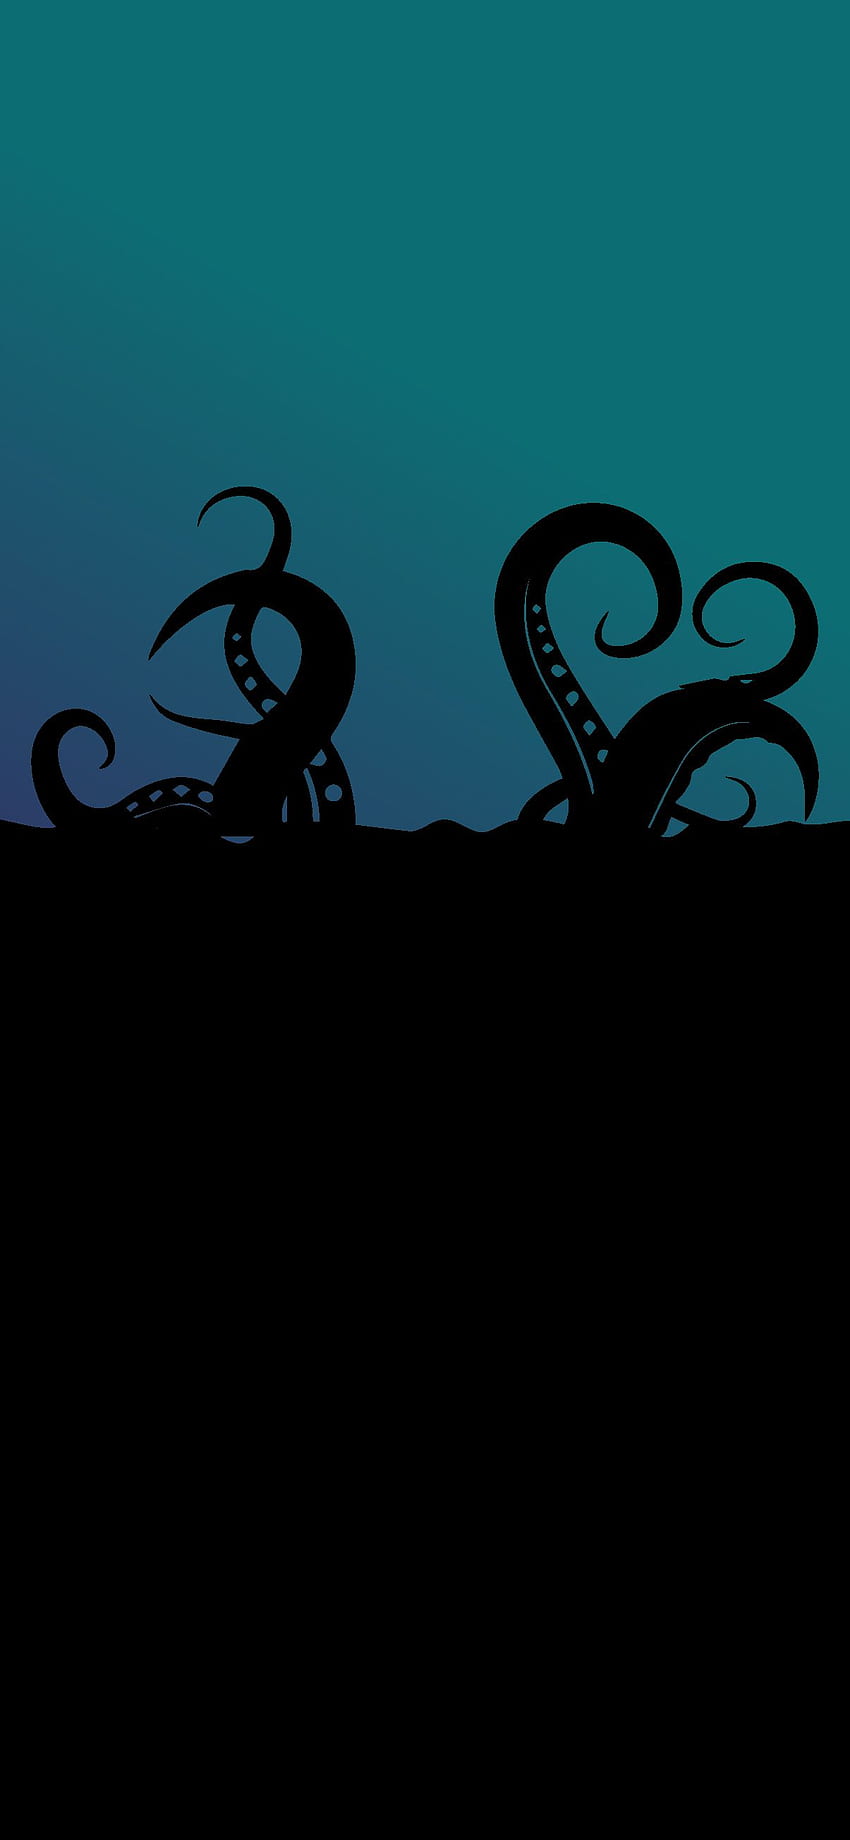 PHONE AMOLED - OCTOPUS, Cute Octopus HD phone wallpaper